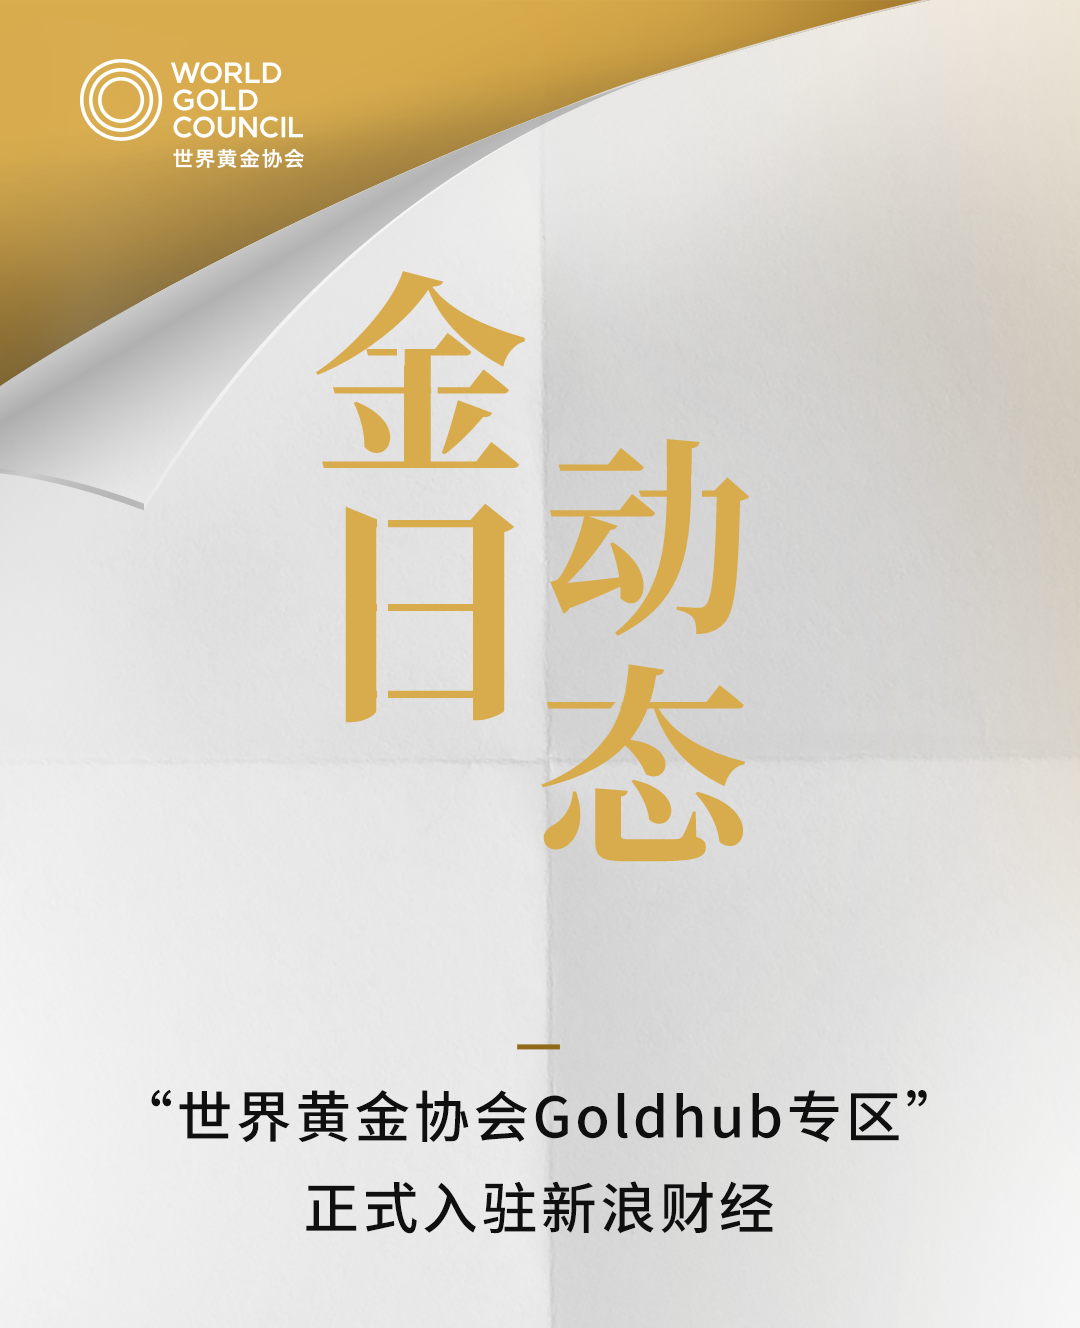 金日动态 | “世界黄金协会Goldhub专区”正式入驻新浪财经